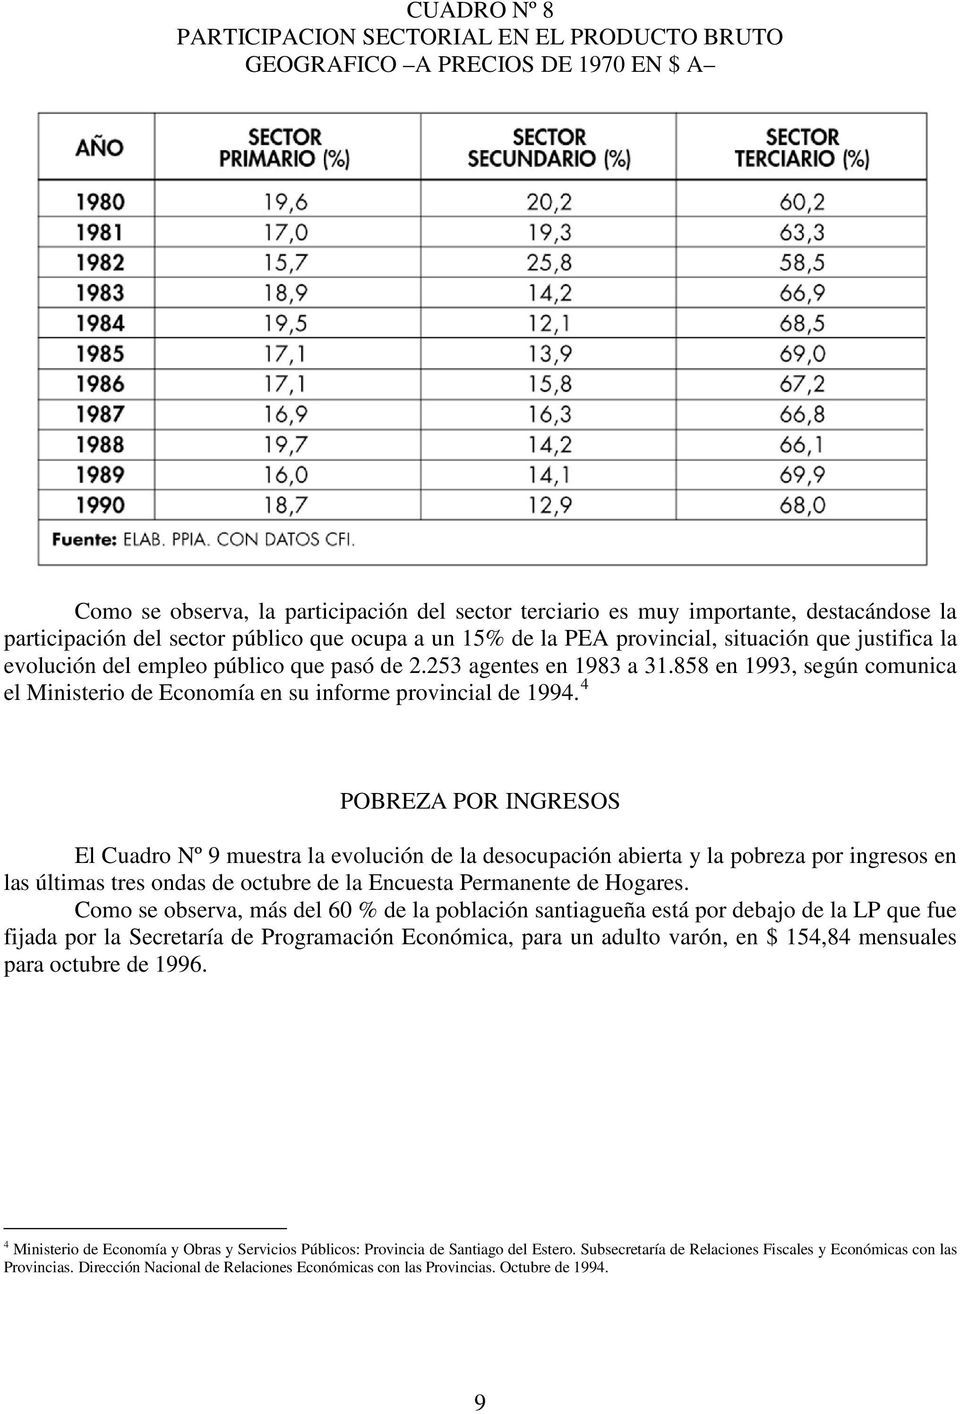 858 en 1993, según comunica el Ministerio de Economía en su informe provincial de 1994.